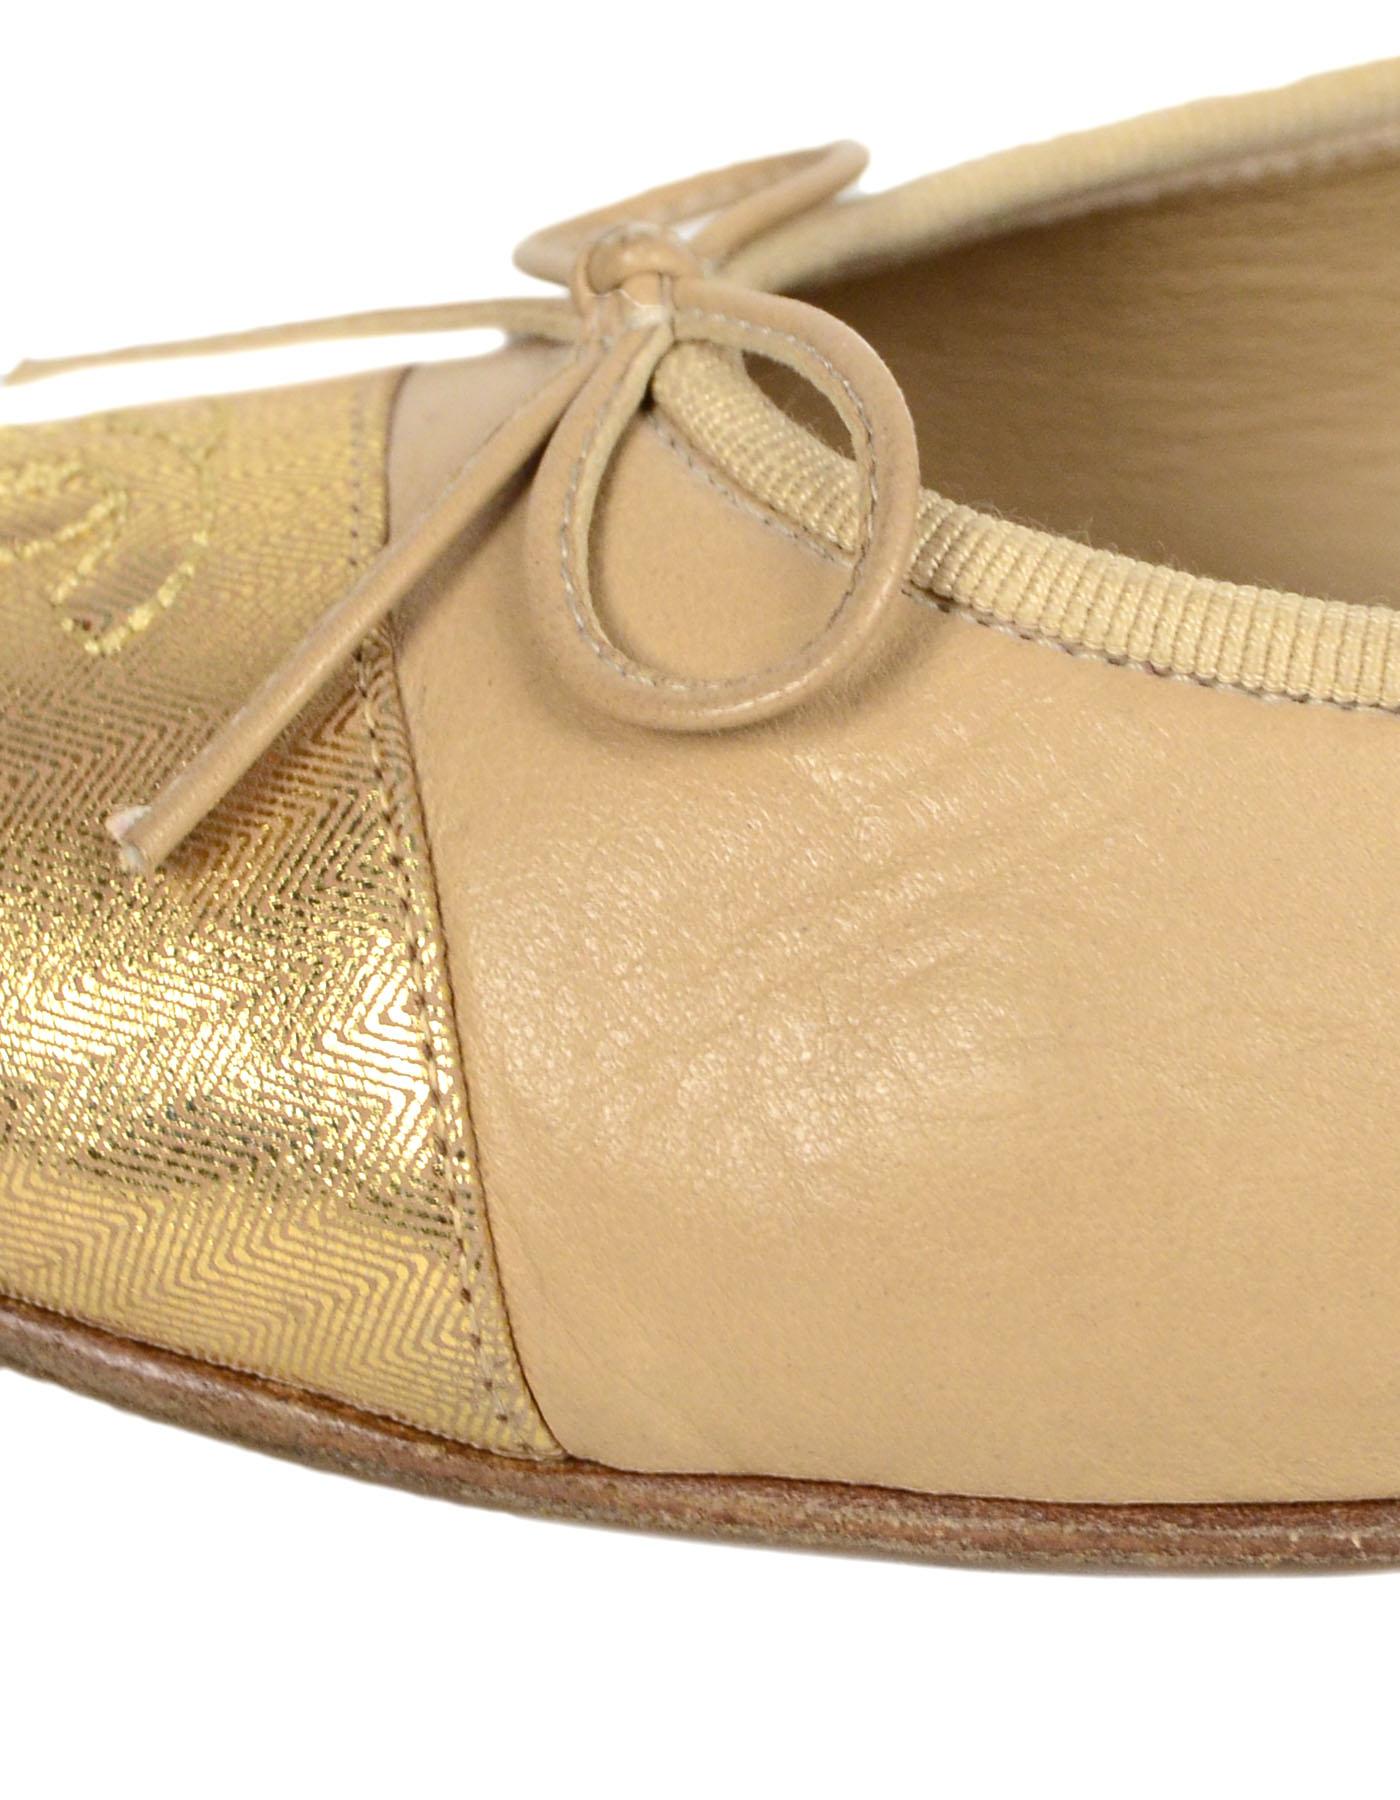 Chanel Beige/Gold Leather Cap Toe CC Ballet Flats sz 39.5 1